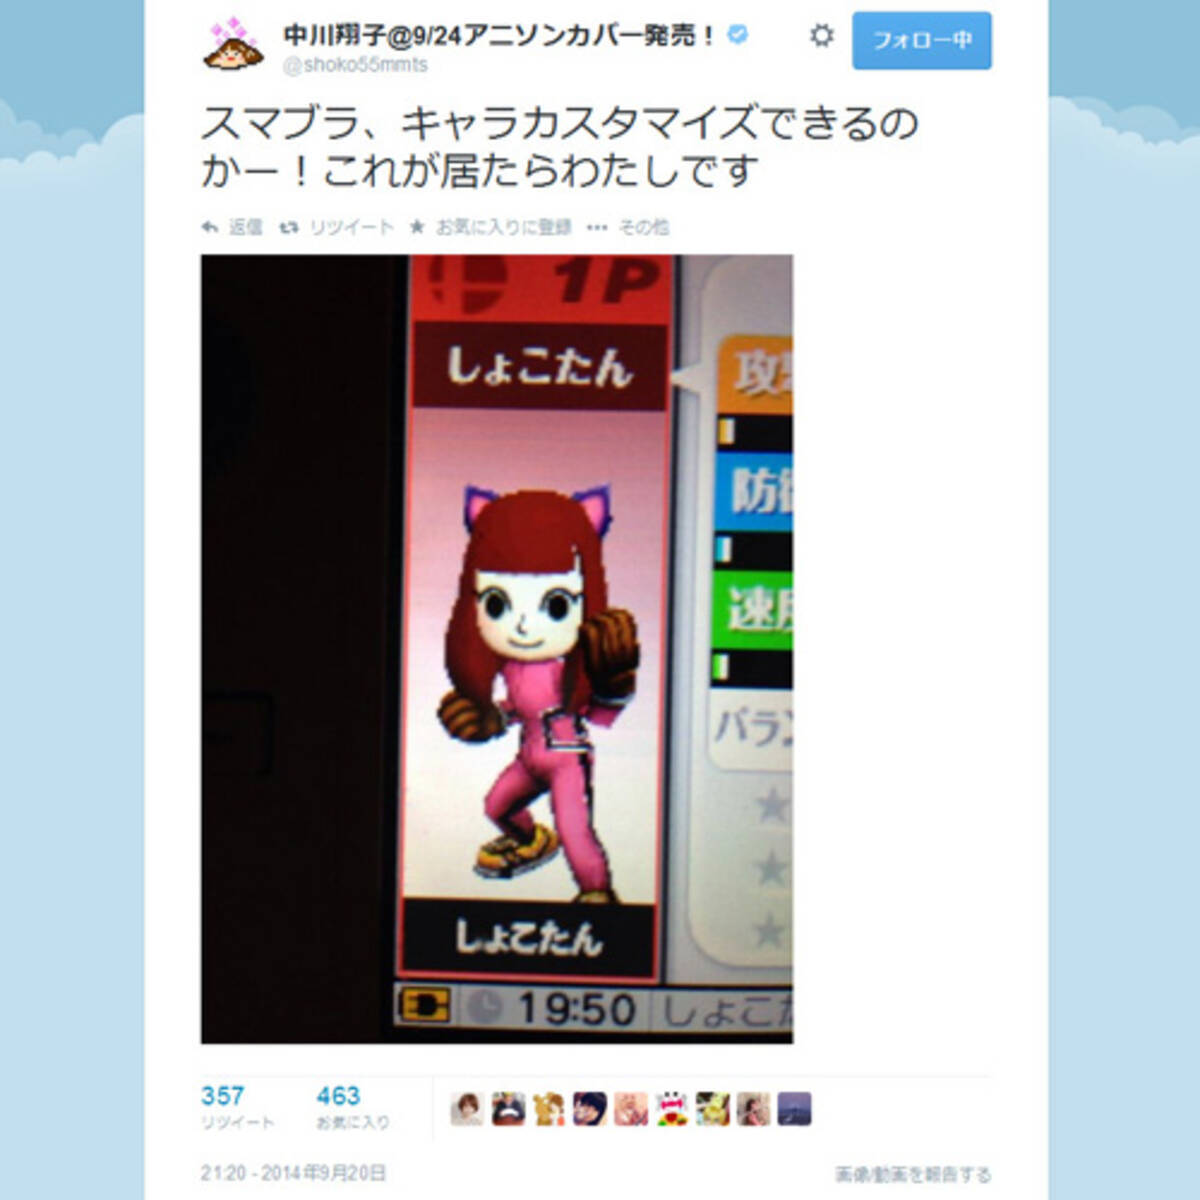 しょこたんこと中川翔子さん スマブラ3dsのmiiファイターを Twitter にアップ 14年9月日 エキサイトニュース